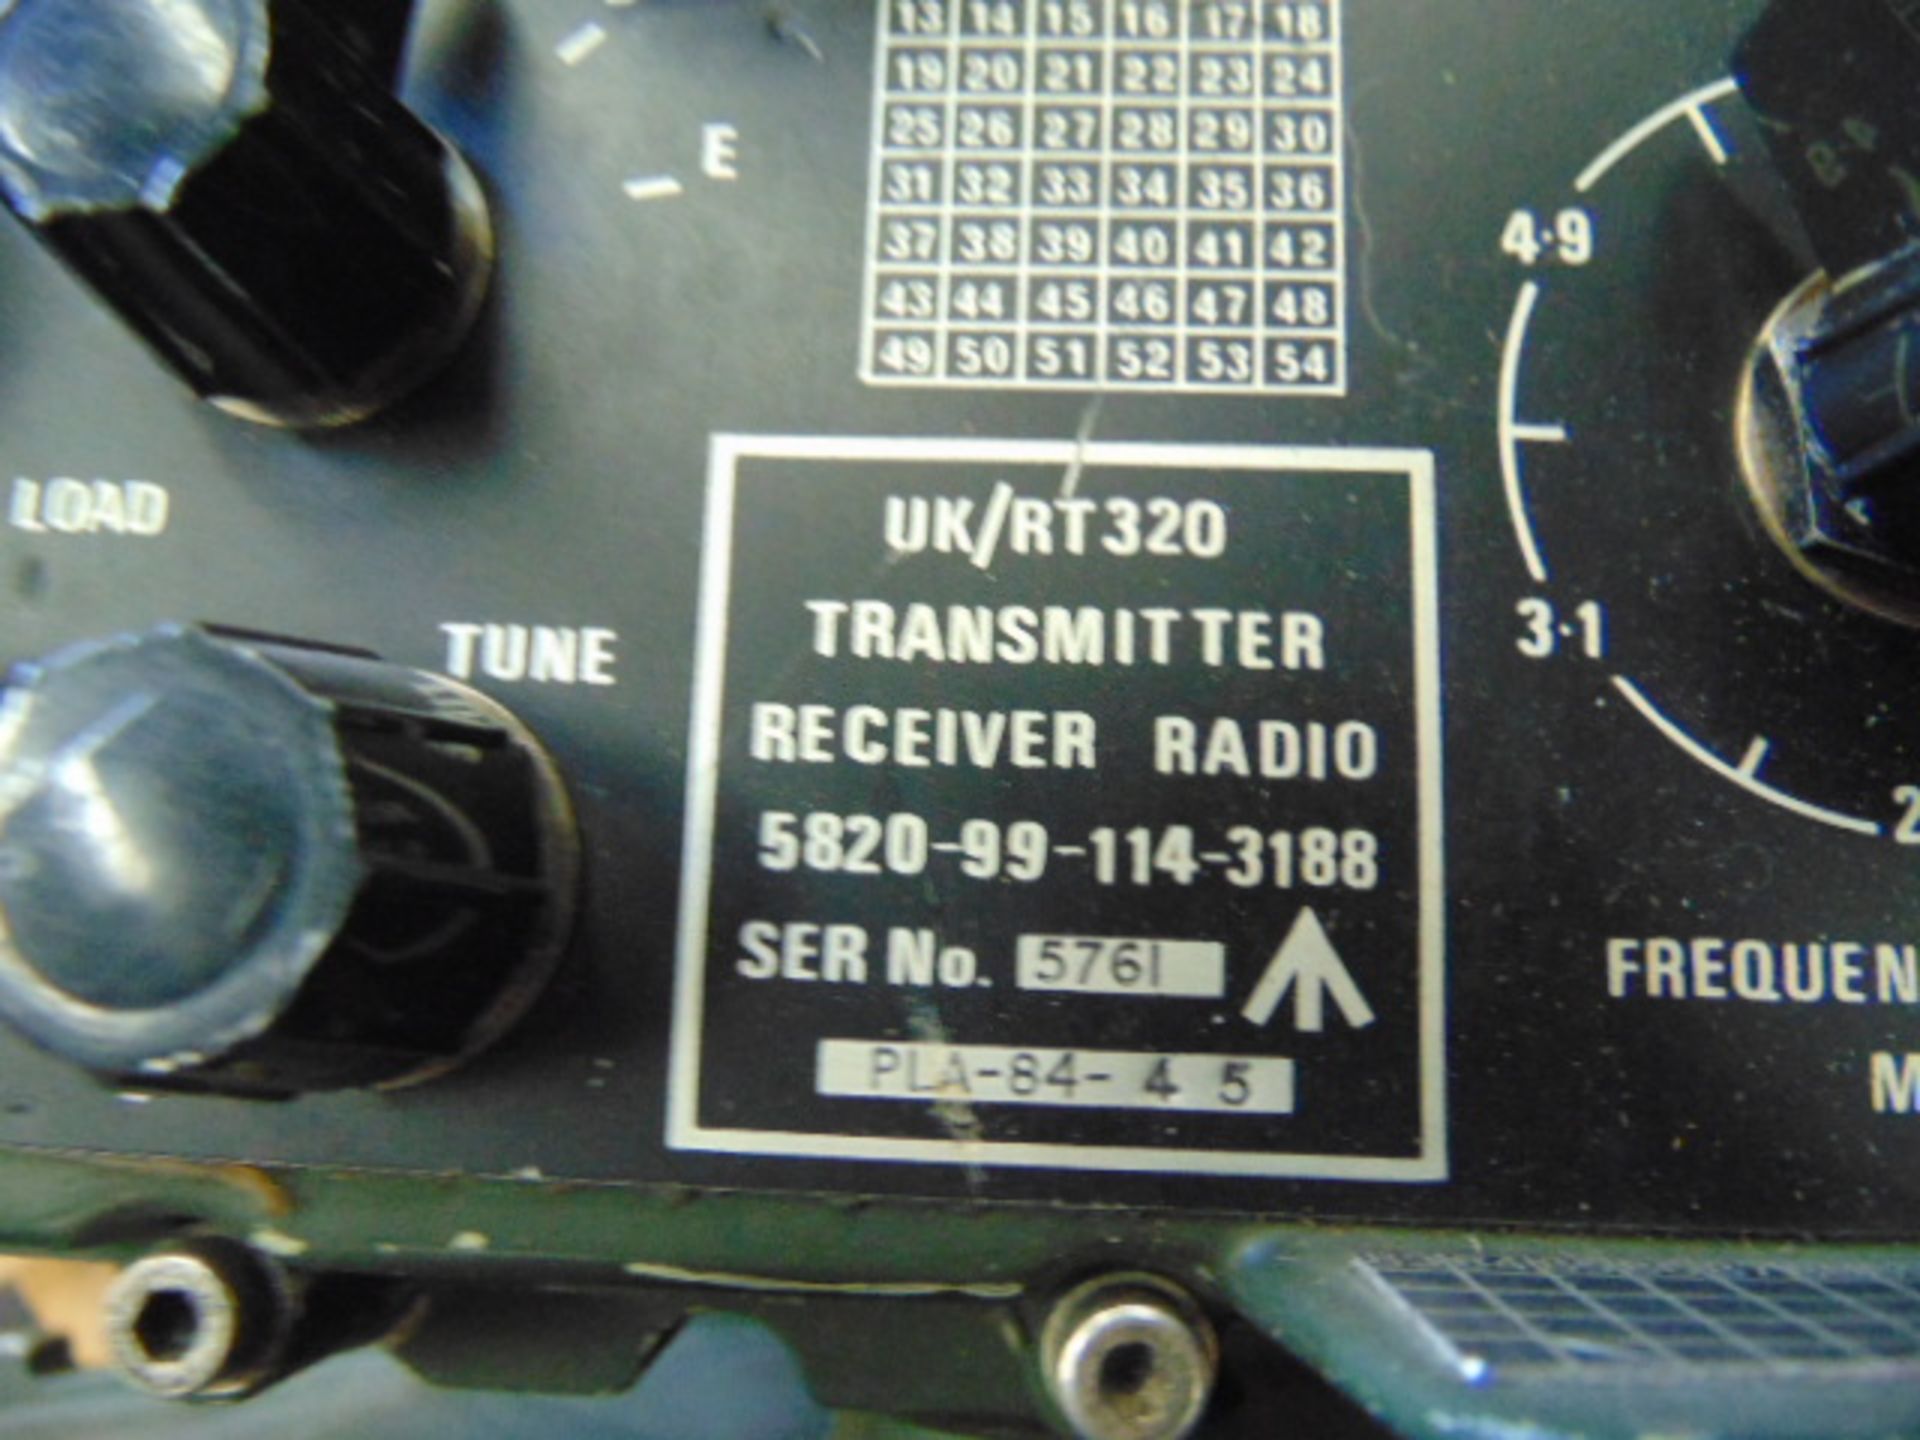 2 x Clansman RT320 Transmiter Receiver Radios - Image 3 of 4